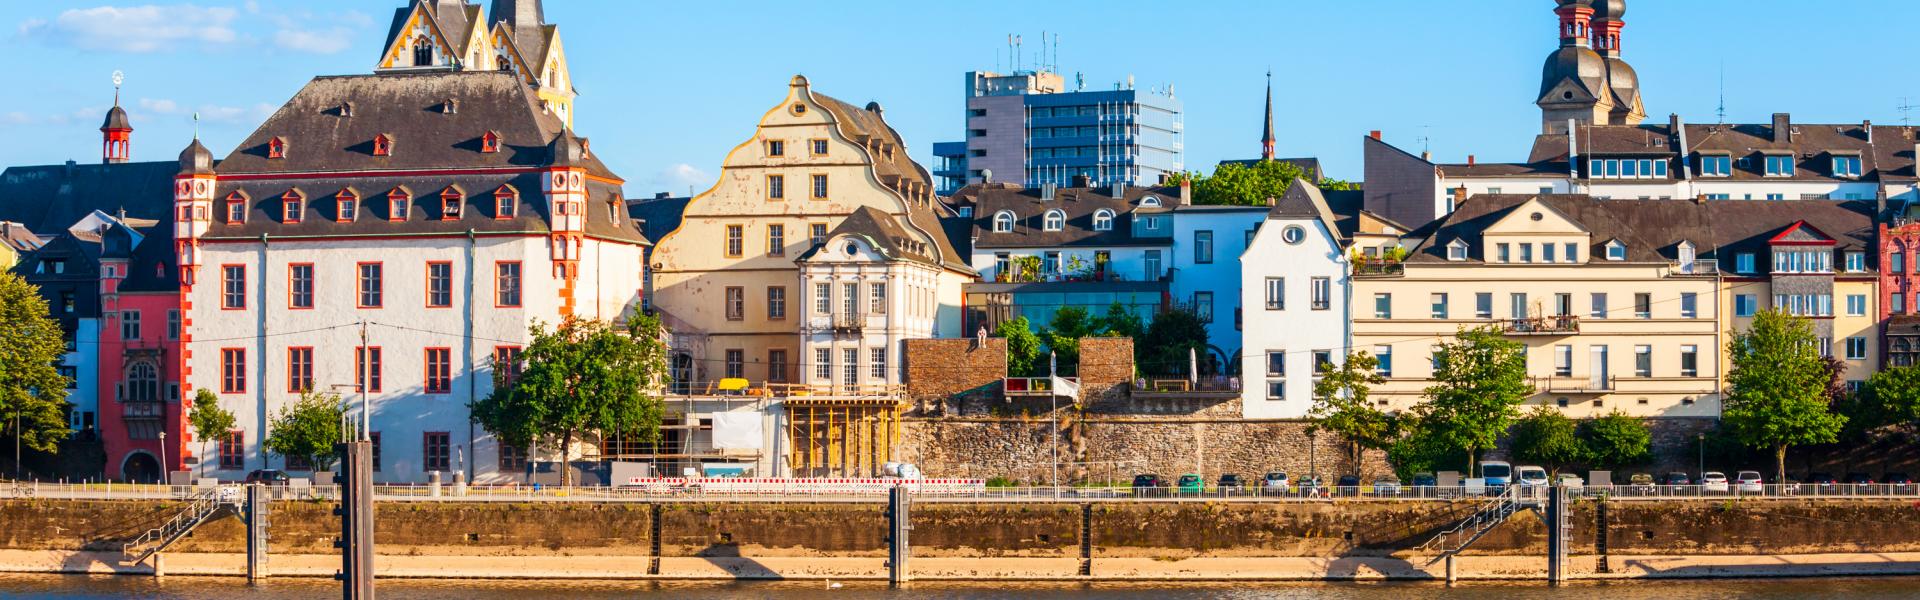 Uw vakantiewoning in Koblenz: ontdek de pracht van de stad tijdens een rondvaart - Casamundo